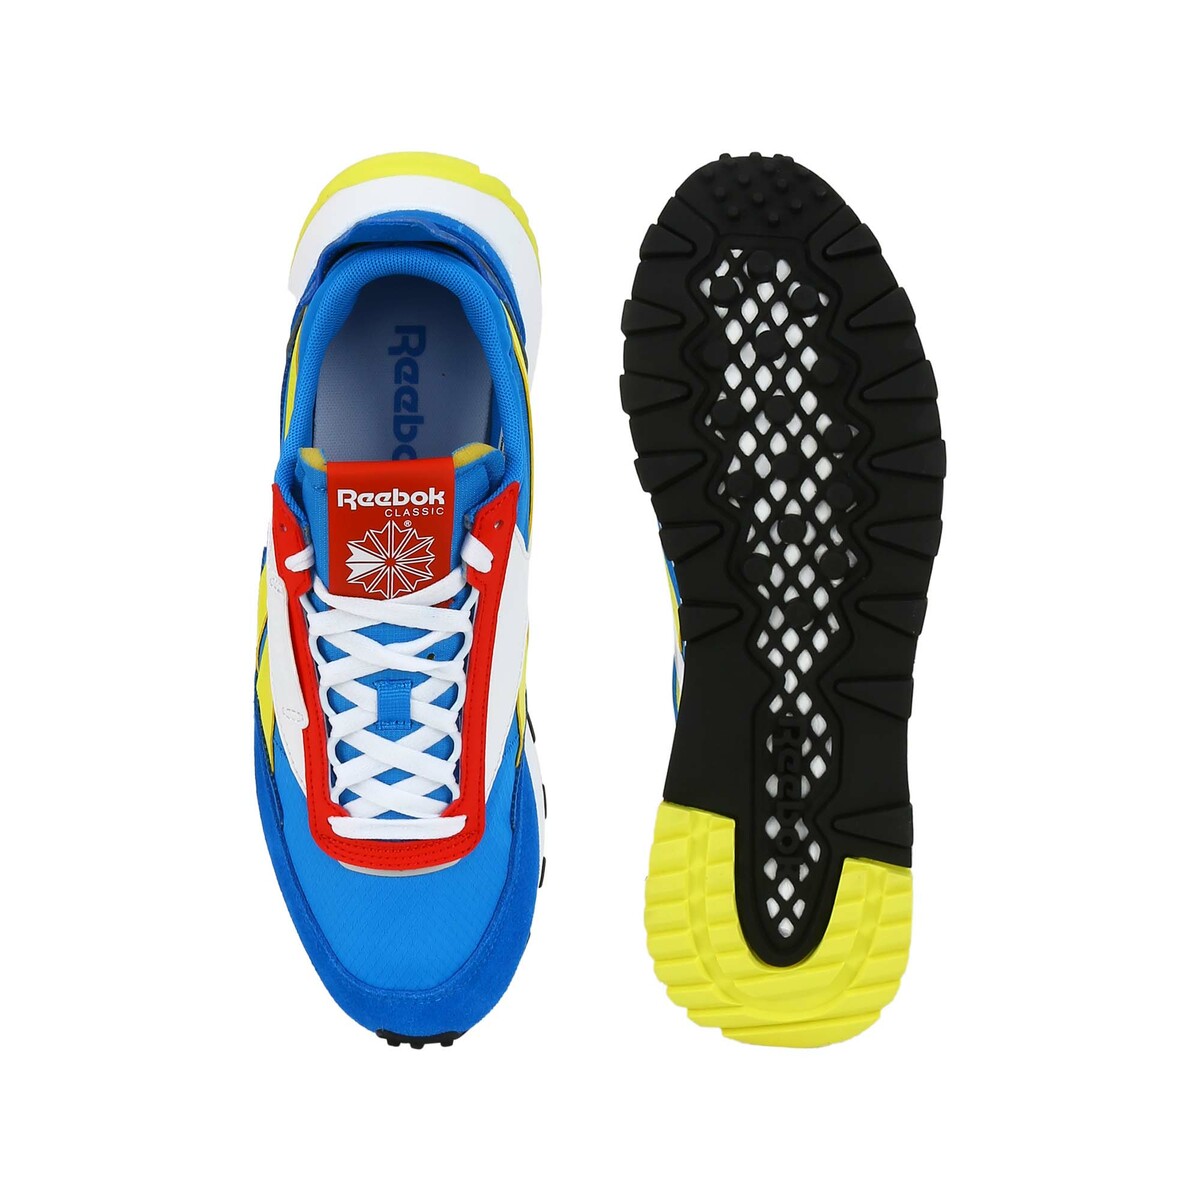 Reebok UniSex Sport Shoe 7429 DynaBlue/HorBlue/InsRed, 42.5